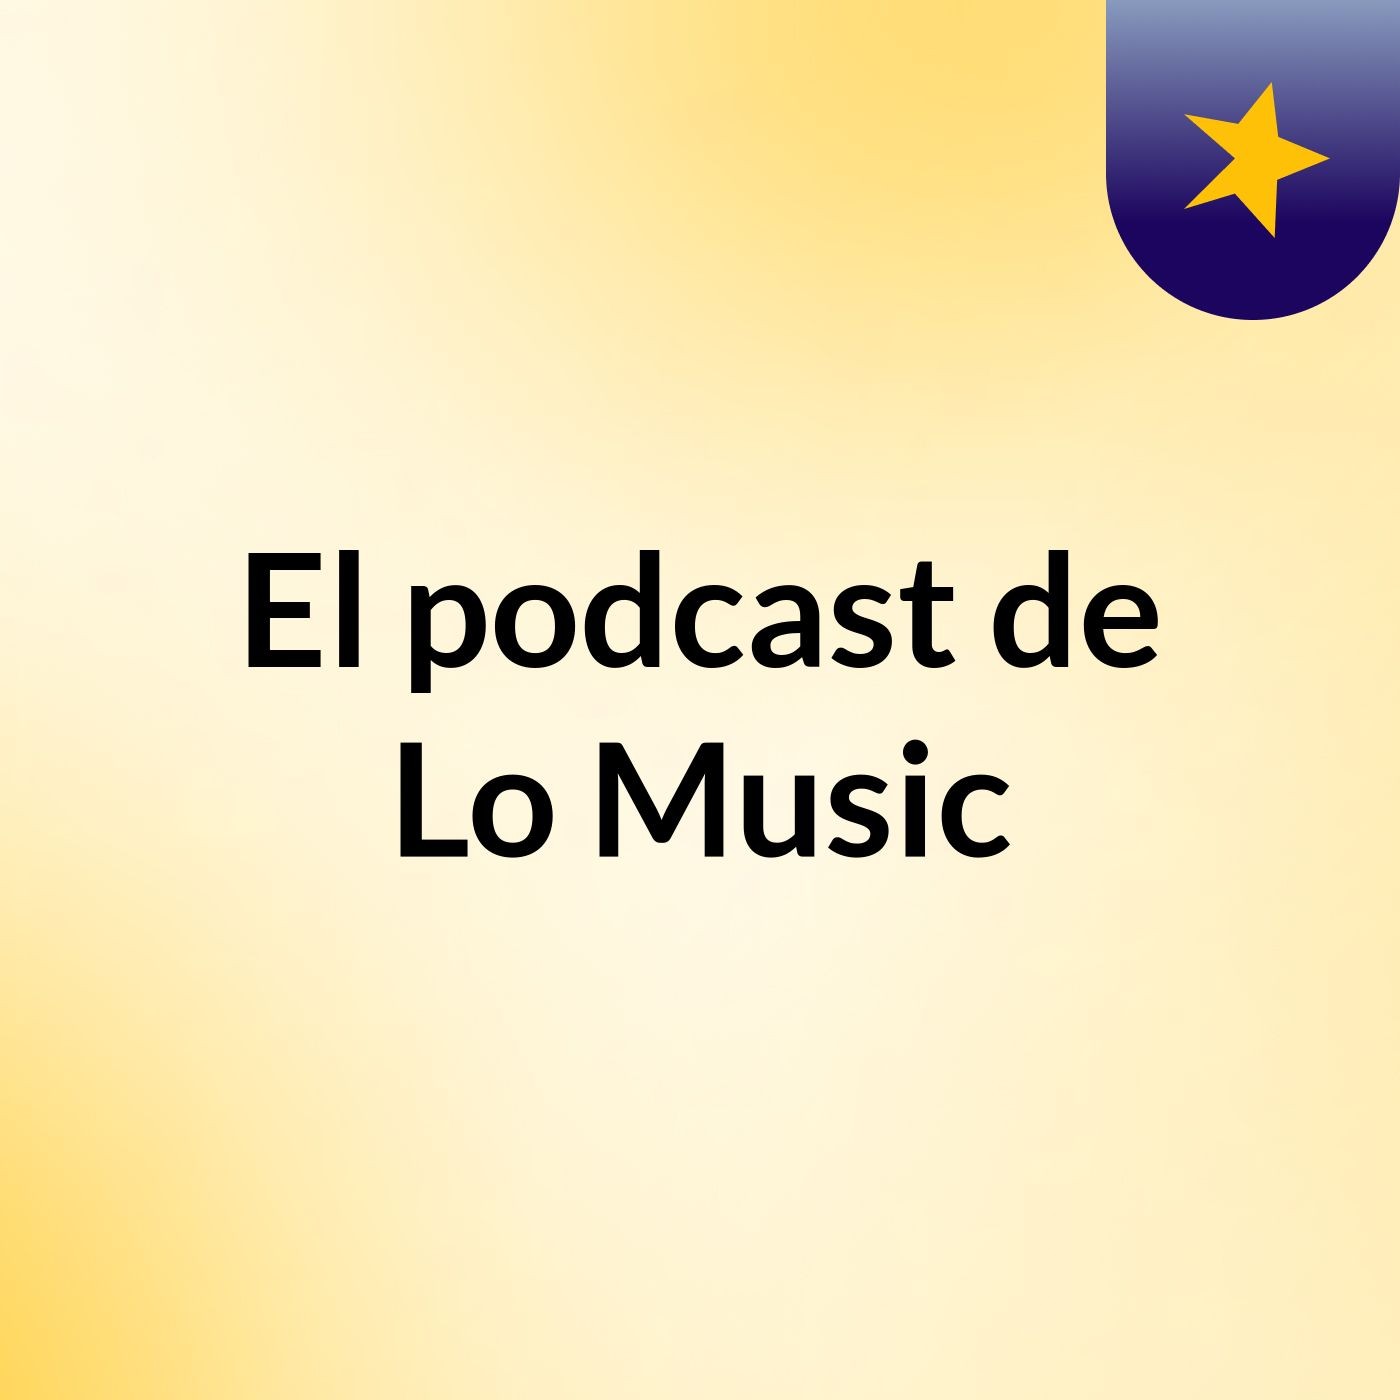 El podcast de Lo Music